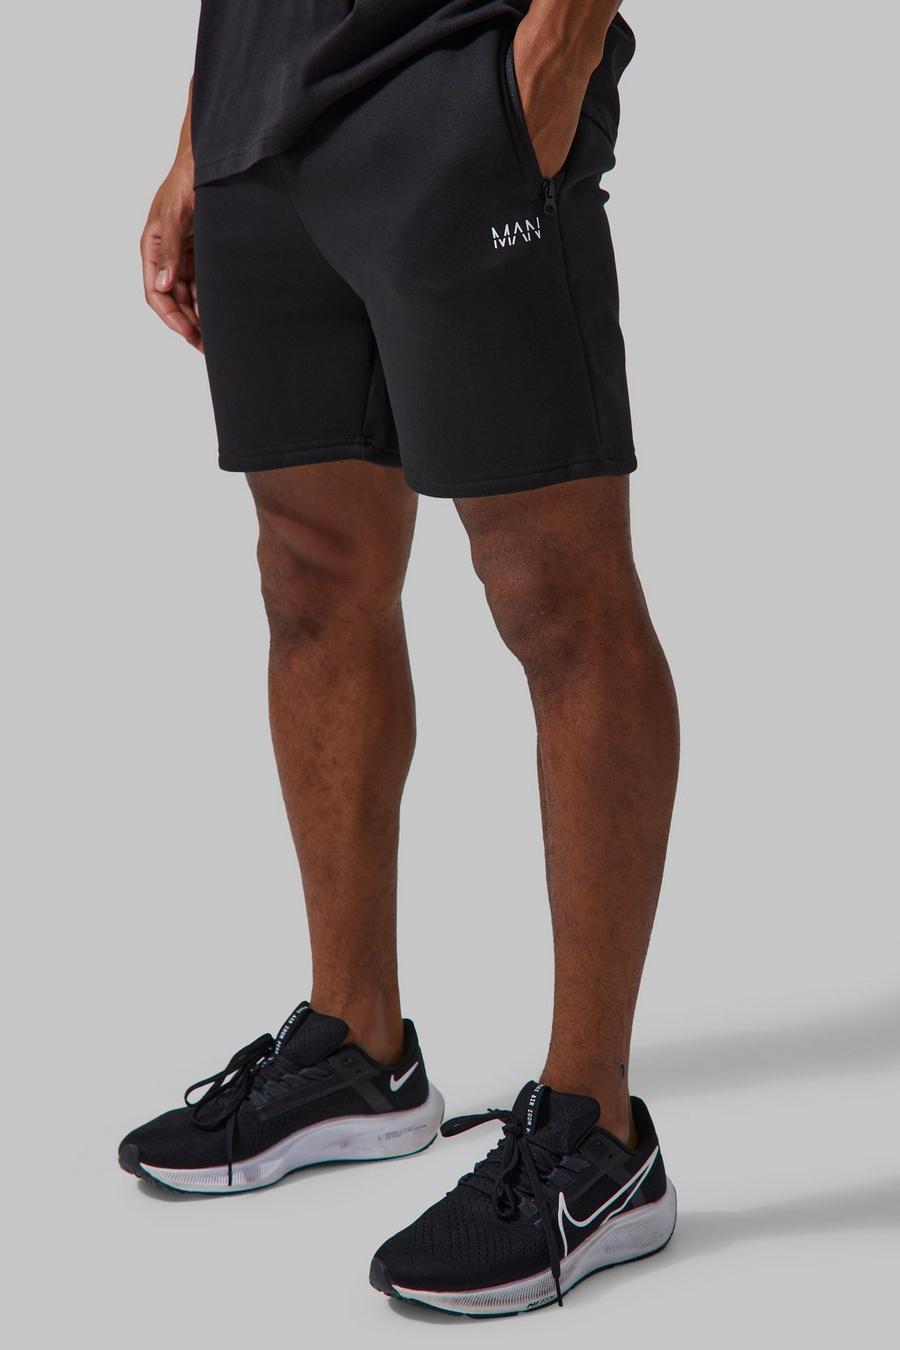 Pantalón corto MAN Active deportivo ajustado al músculo, Black nero